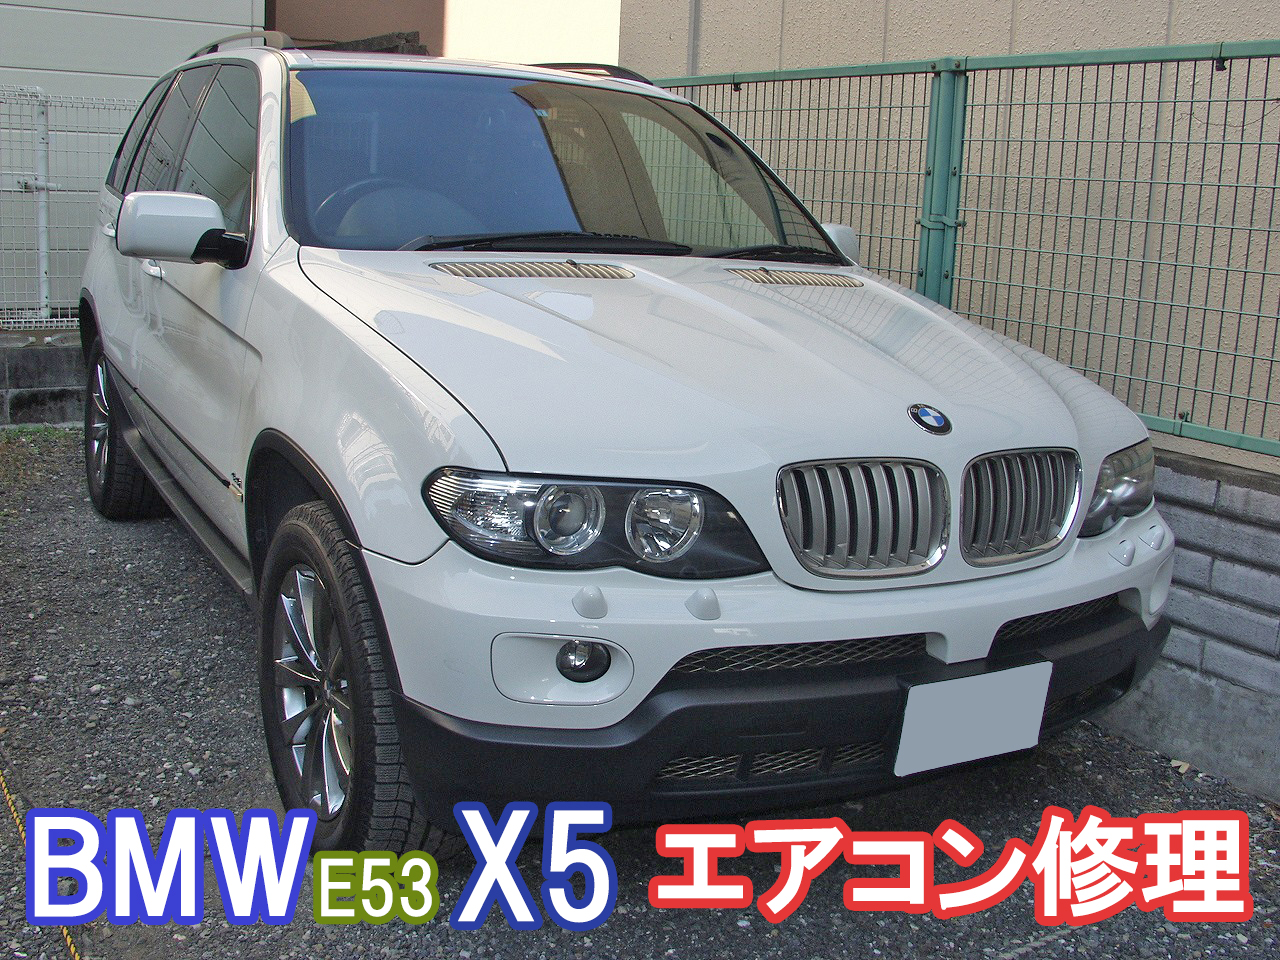 BMW E53 X5 エアコン修理の中で安い事例をご紹介します。